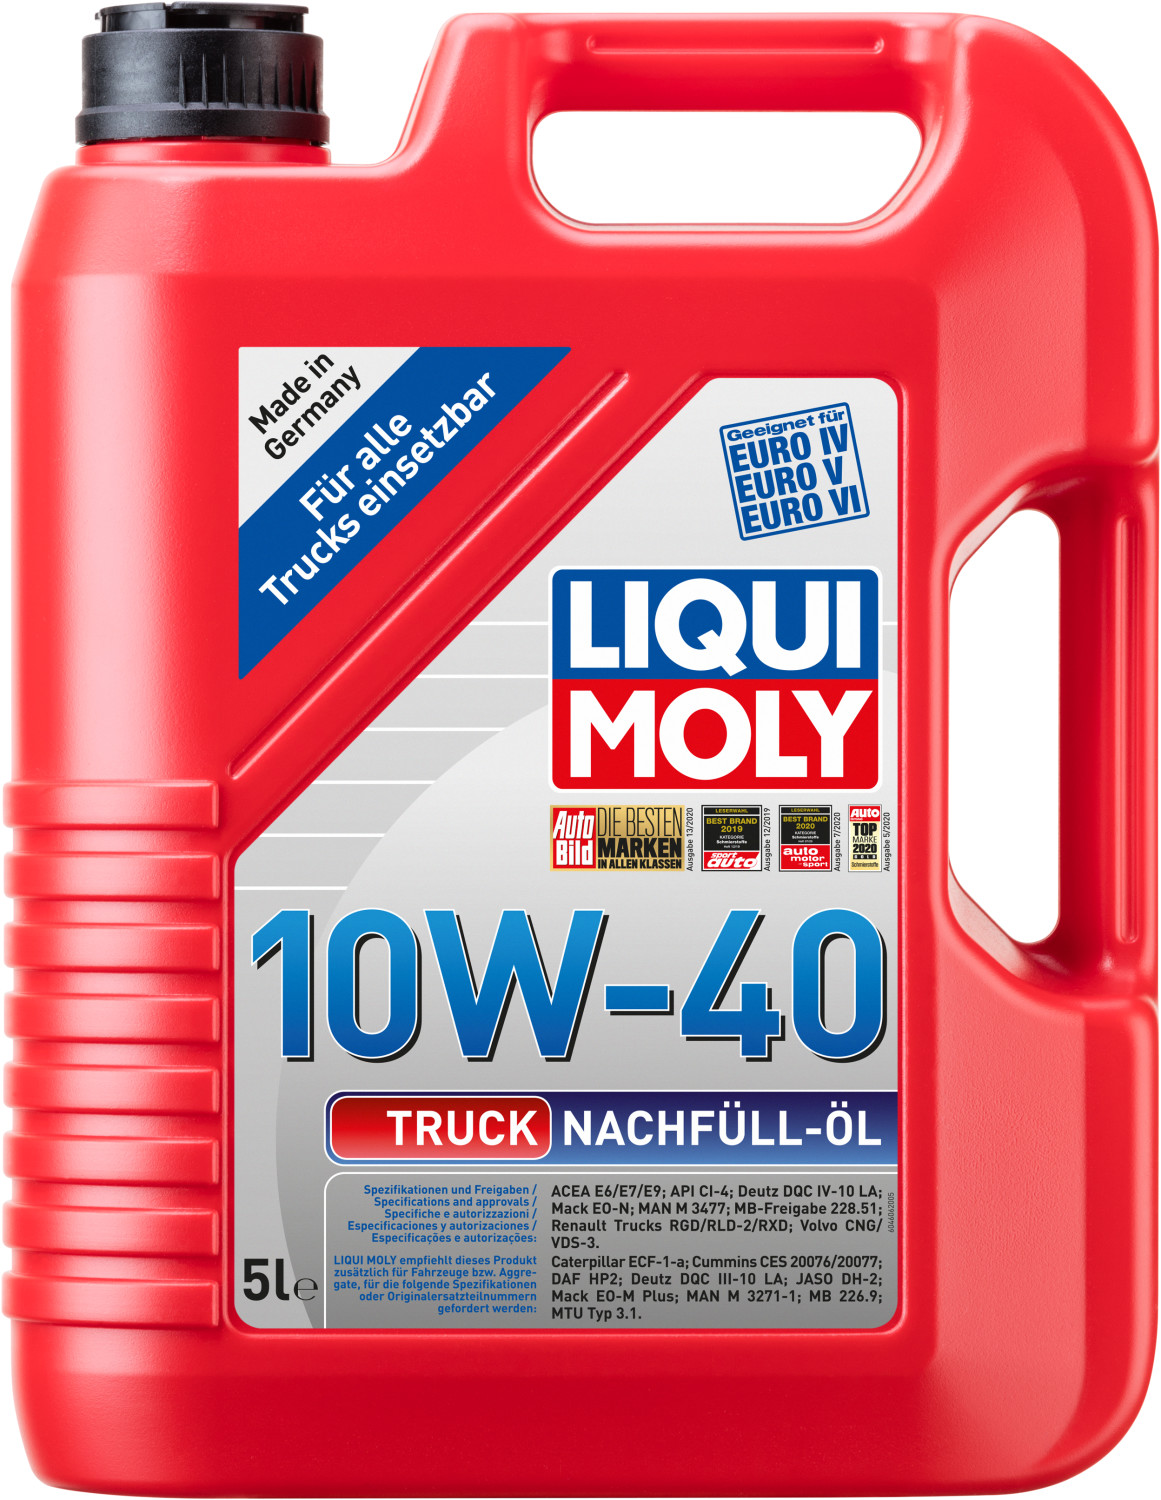 LIQUI MOLY Motoröl Truck 10W-40 5L Kanister 5l - 4606, 51,99 €